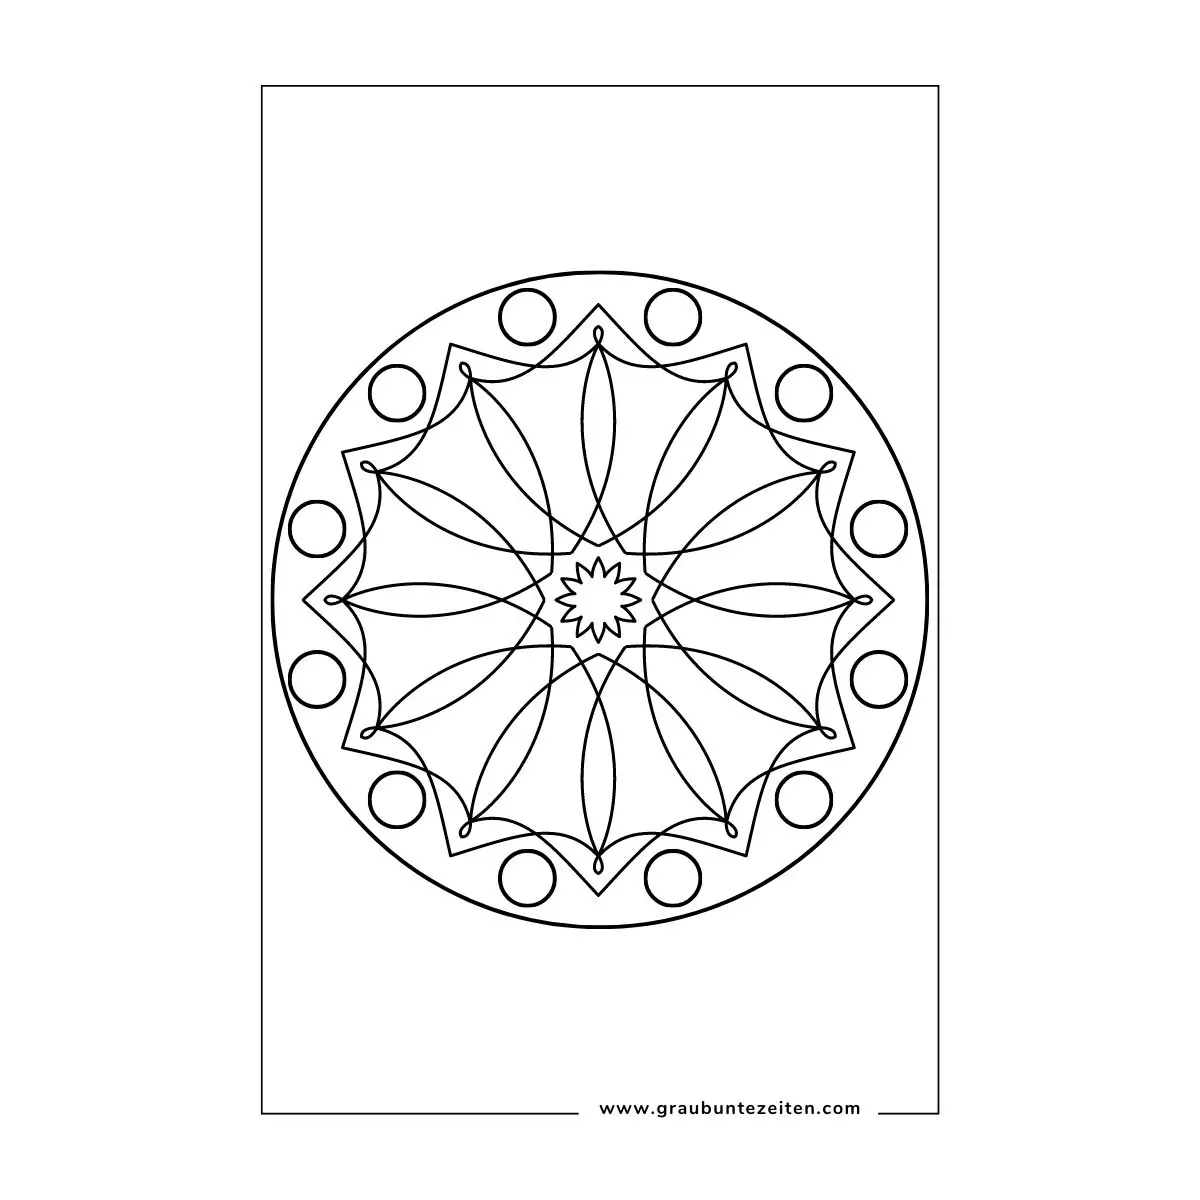 Ausmalbild Mandala. In der Mitte ist ein Stern. In der zweiten Reihe sind geschwungene Linien. Ganz außen sind Kreise.